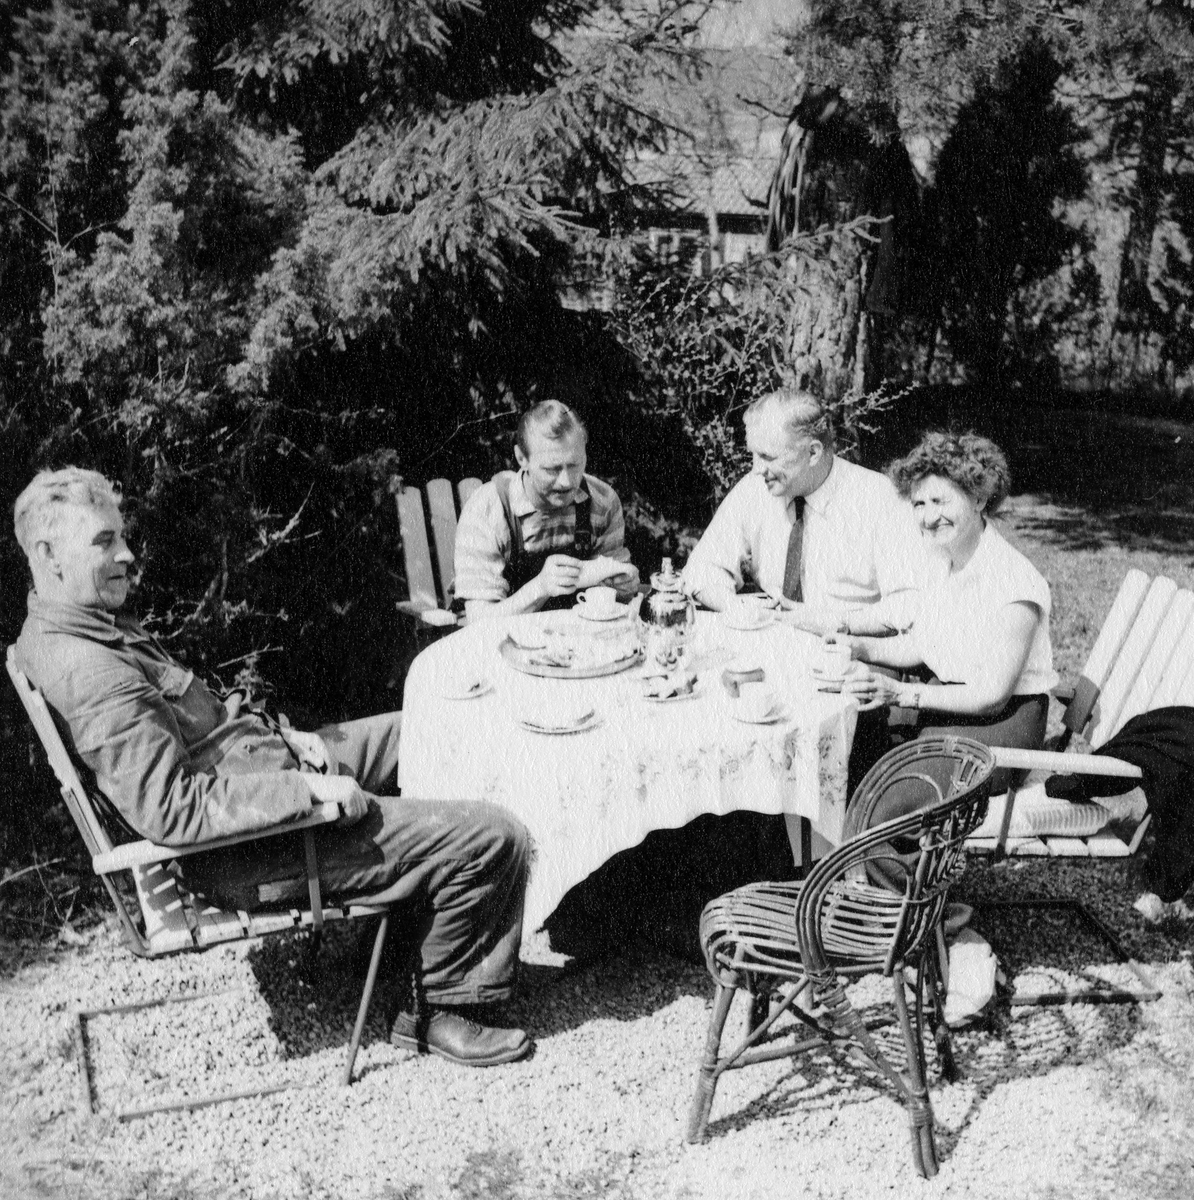 Tre män och en kvinna fikar i en trädgård.

Från vänster: Algot Johansson, Rådman, Erik Andersson och Maja Larsson.